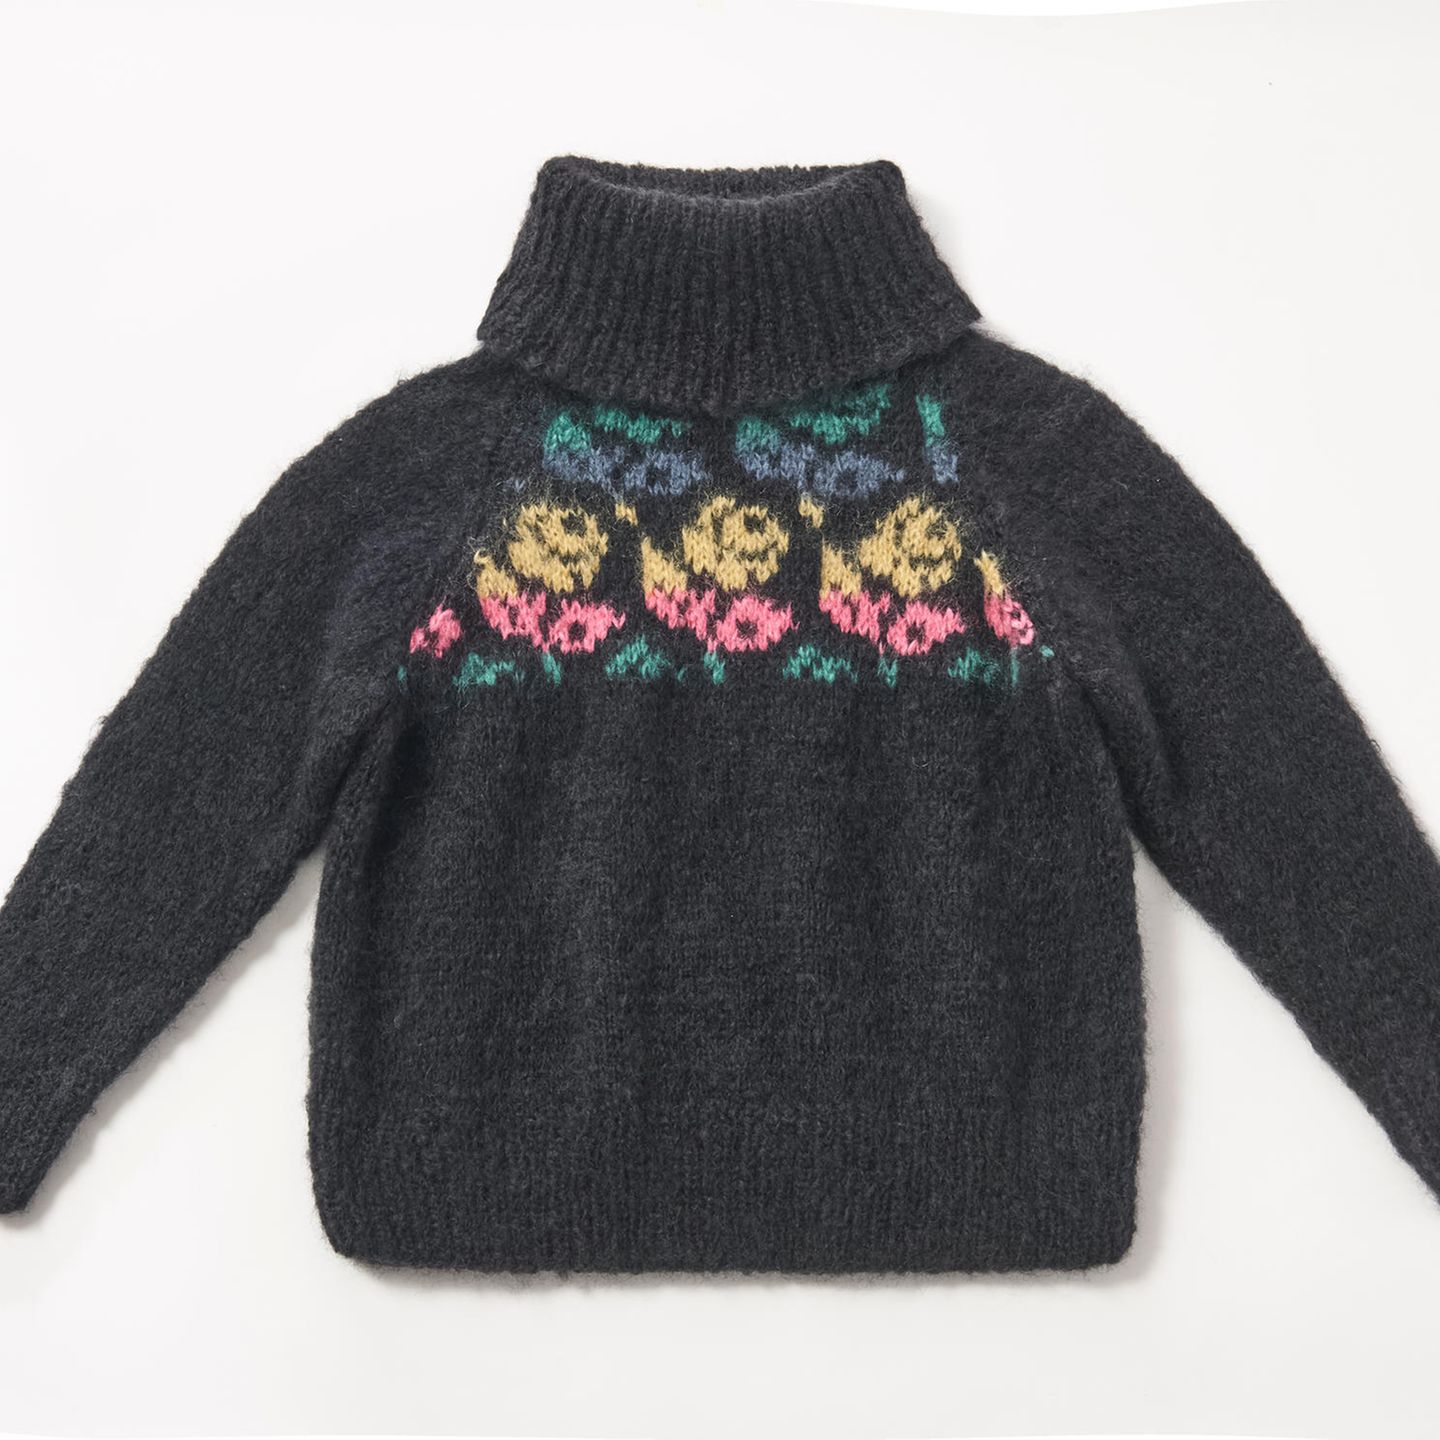 Rosenpullover stricken: dunkler Pullover mit Rollkragen und Rosenmuster